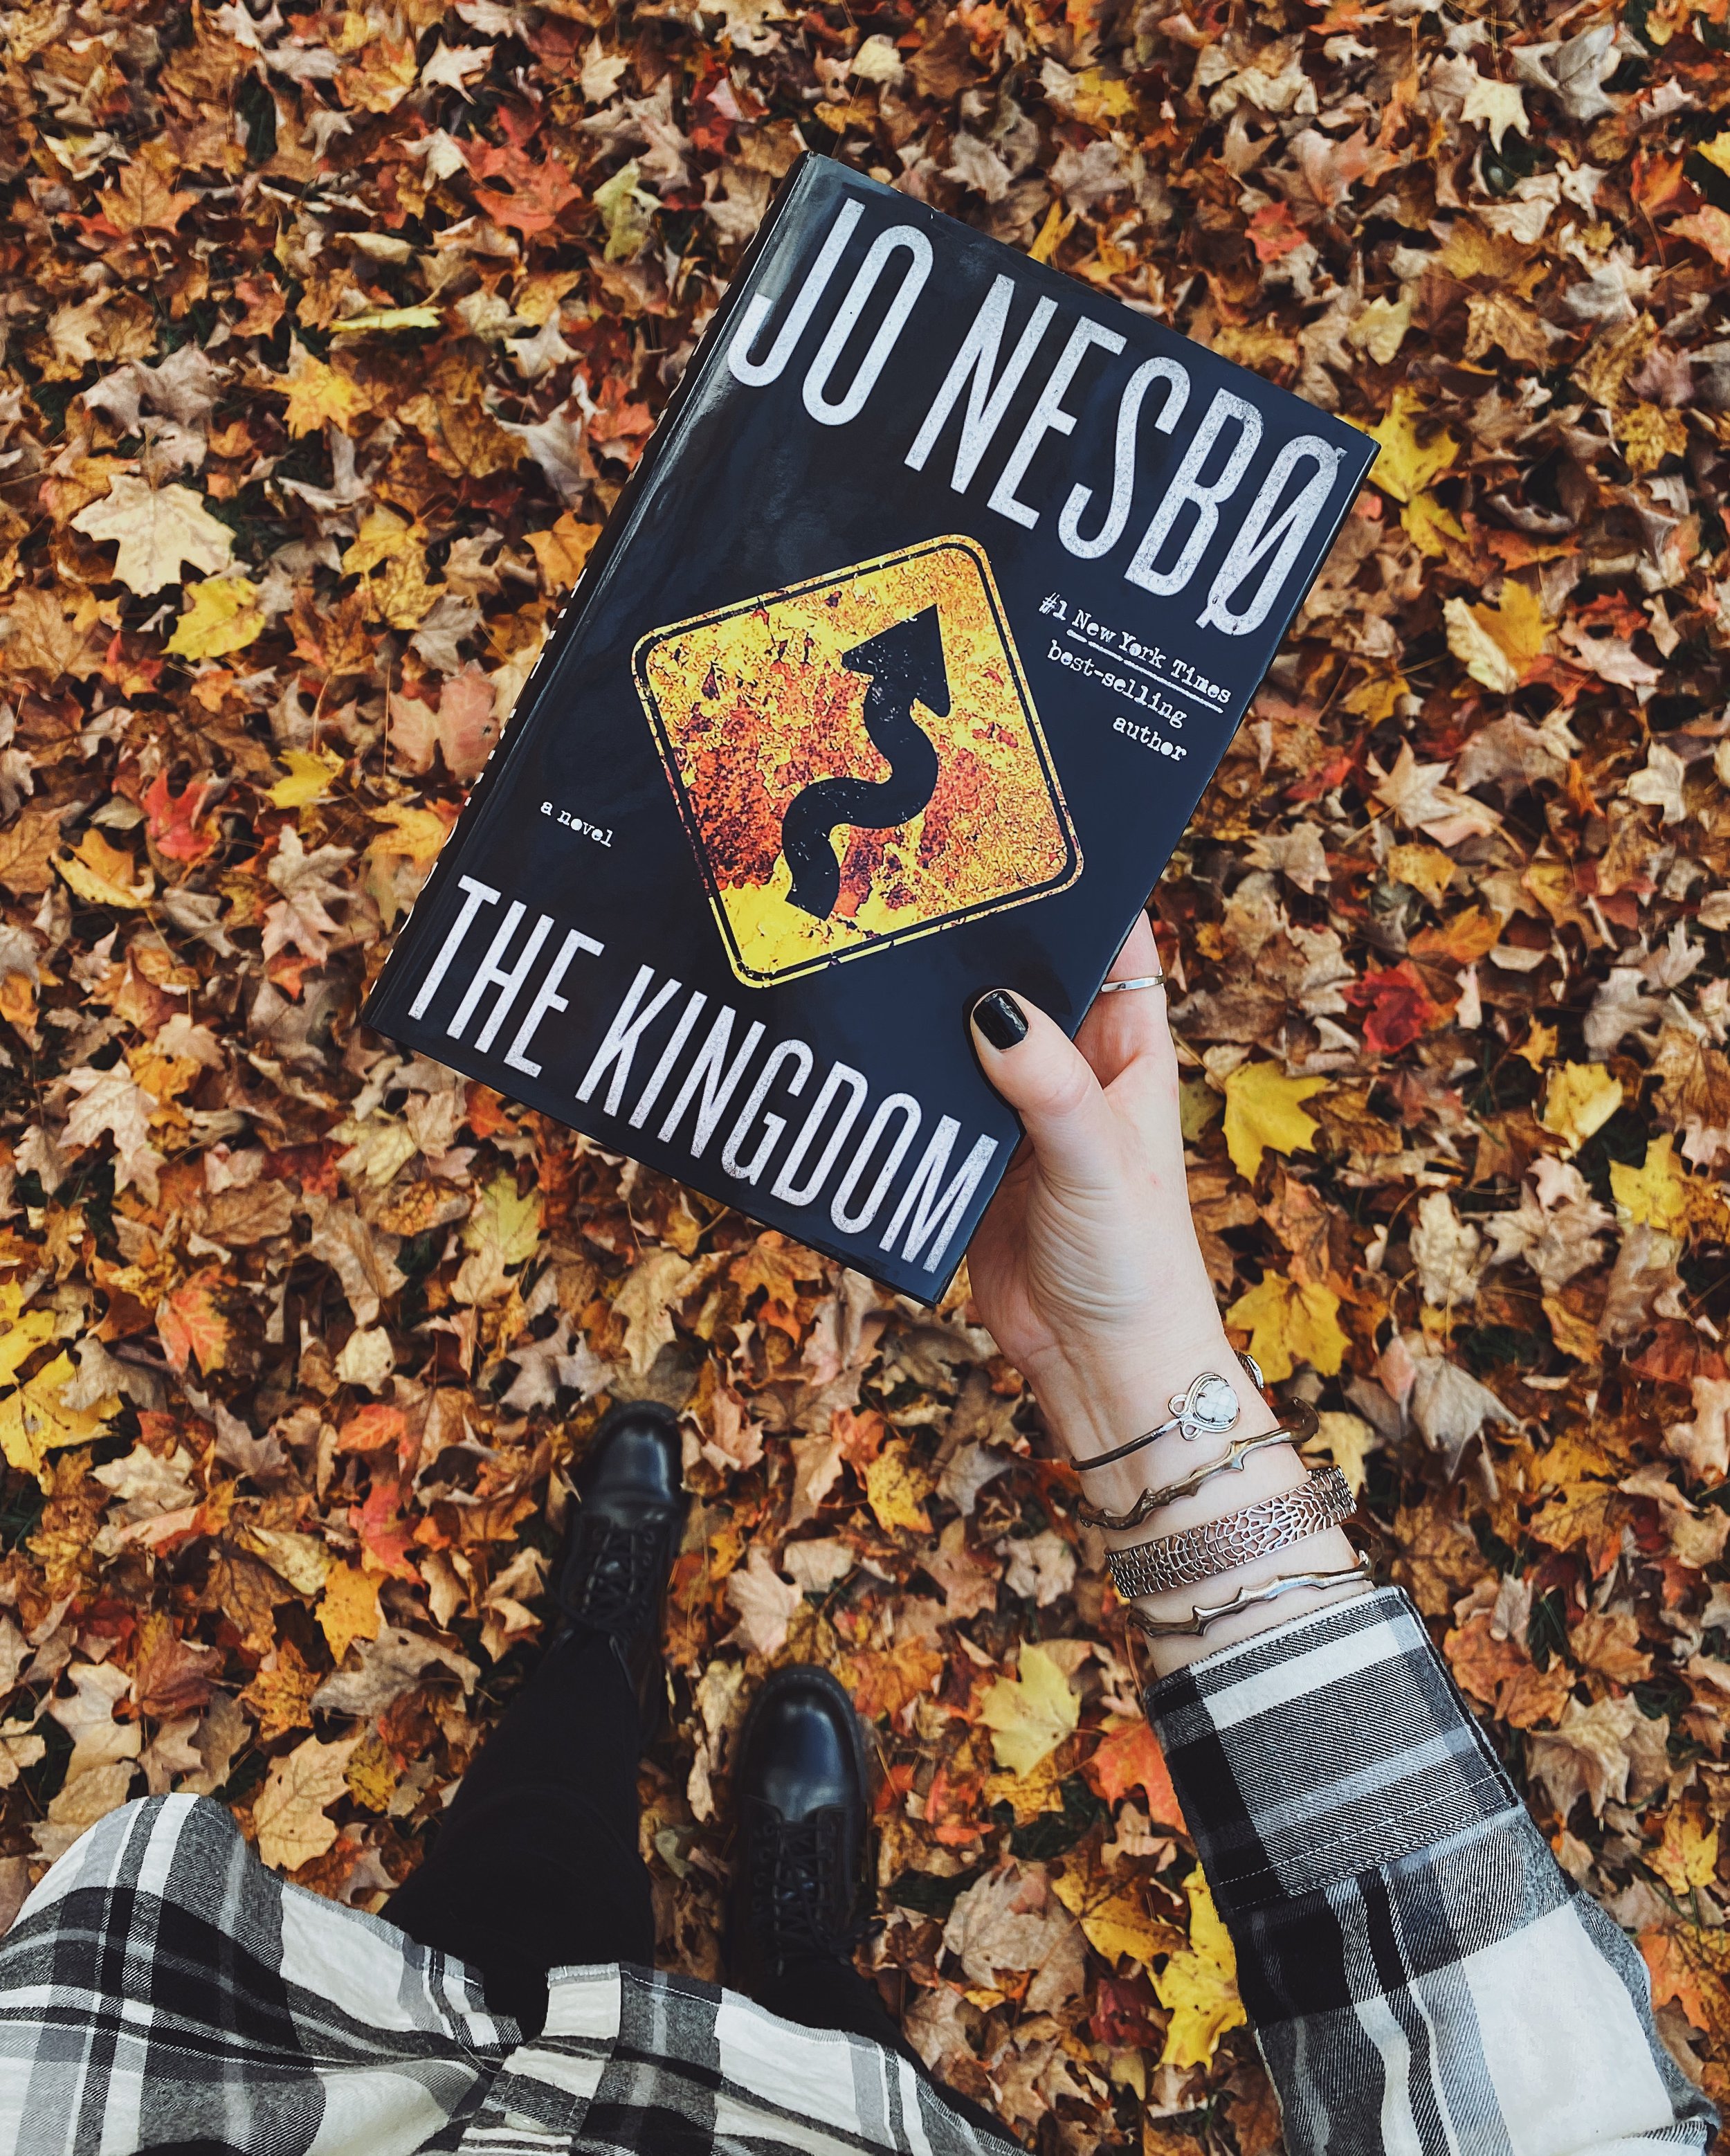 Jo Nesbo The Kingdom.JPG